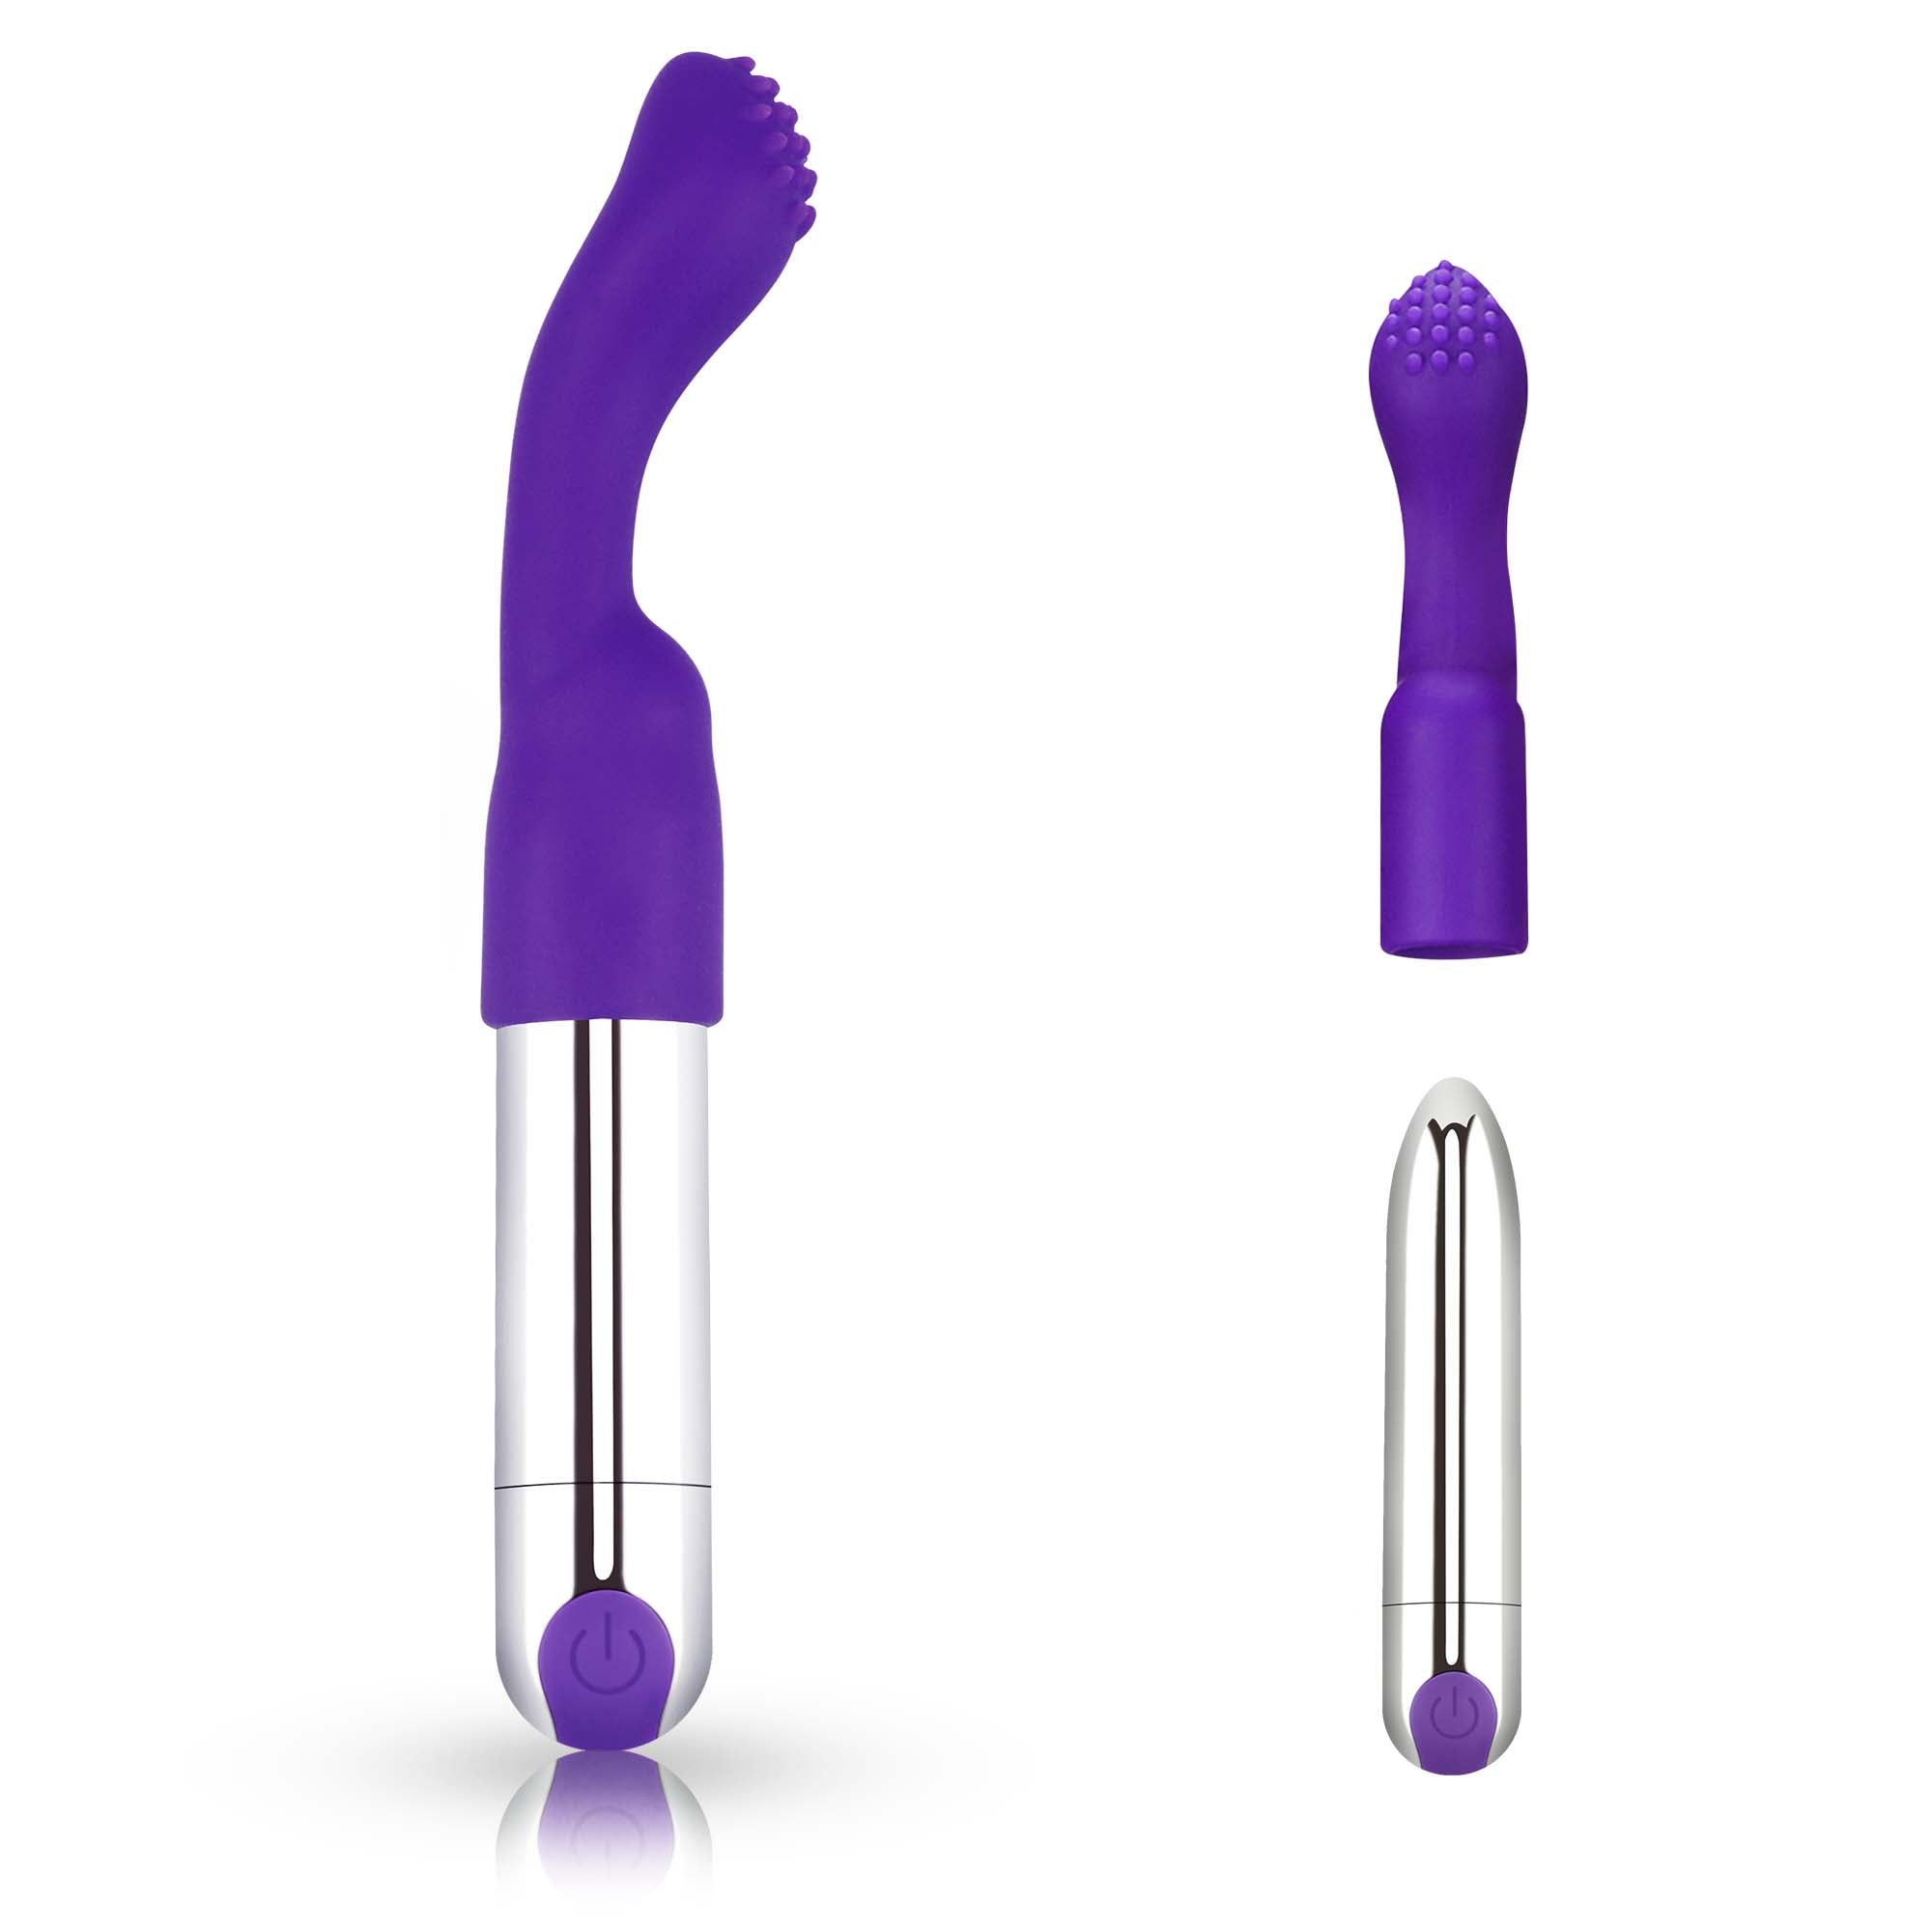 Bullet Vibrator-Finger Vibrator-G-spot Vibrator 3 in 1 Rechargeable Versatile Tickler for Women pleasure picture